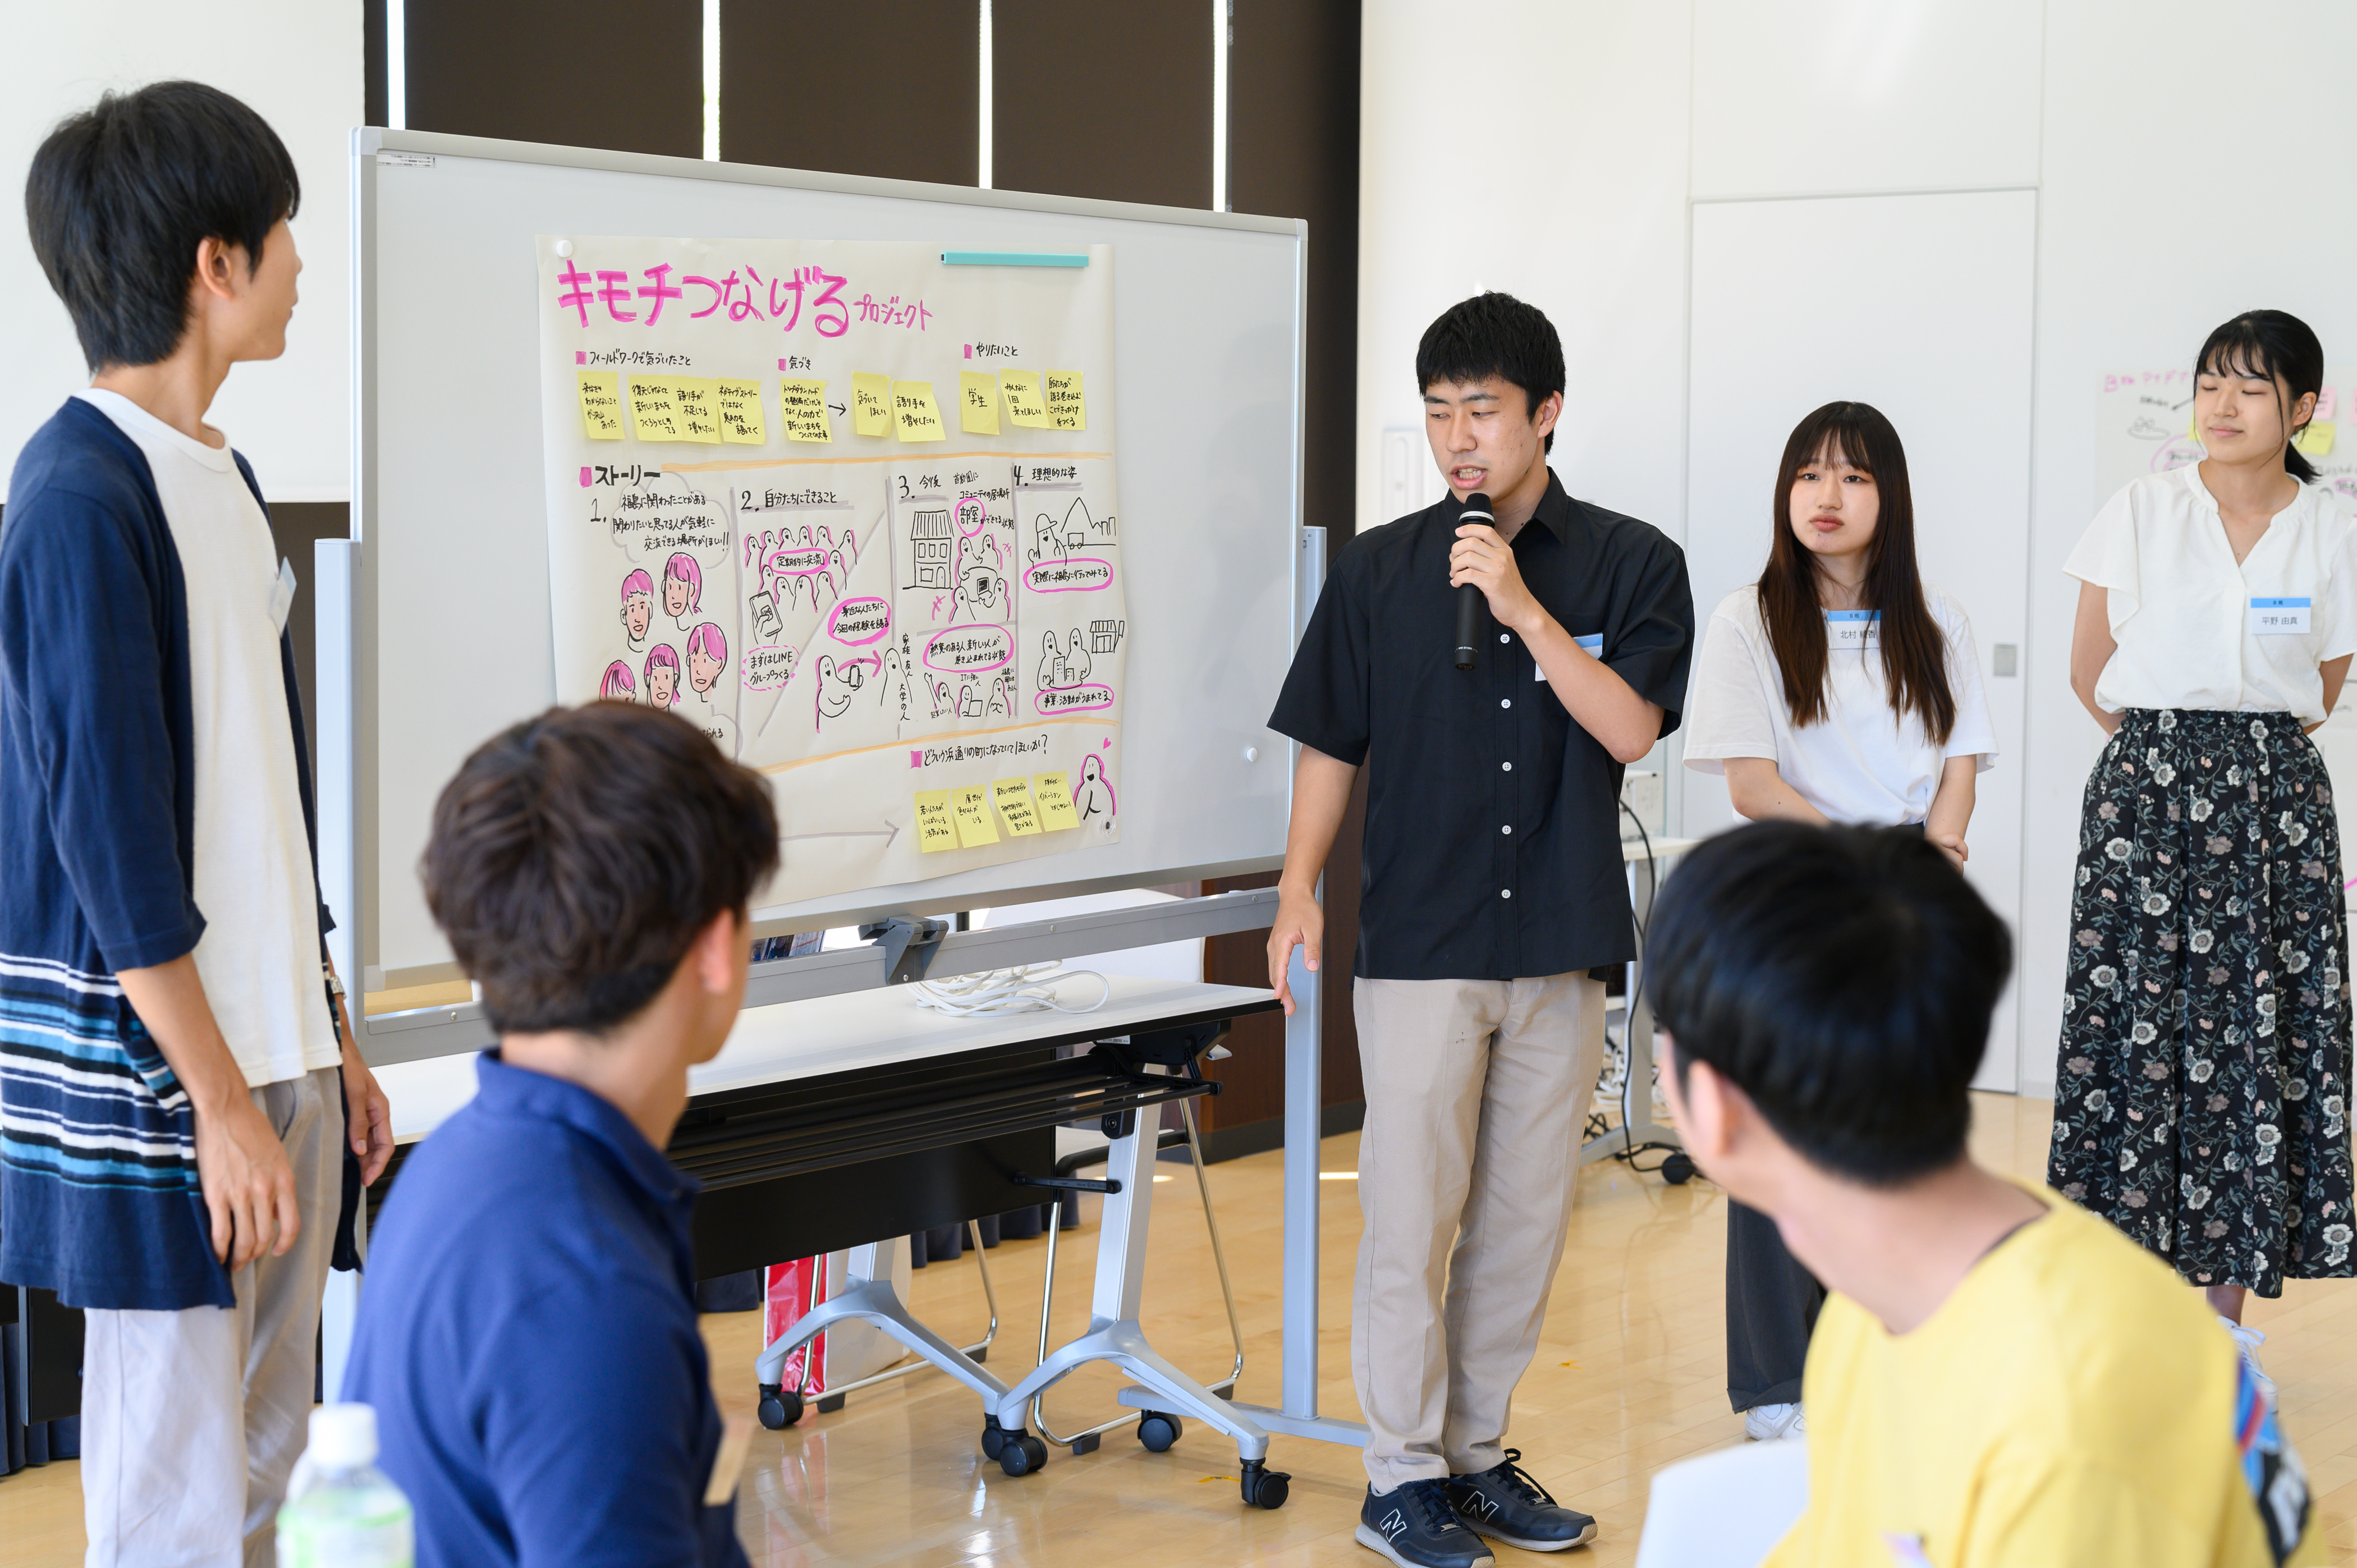 「福島の復興のために、自分たちには何ができるか」をグループ発表